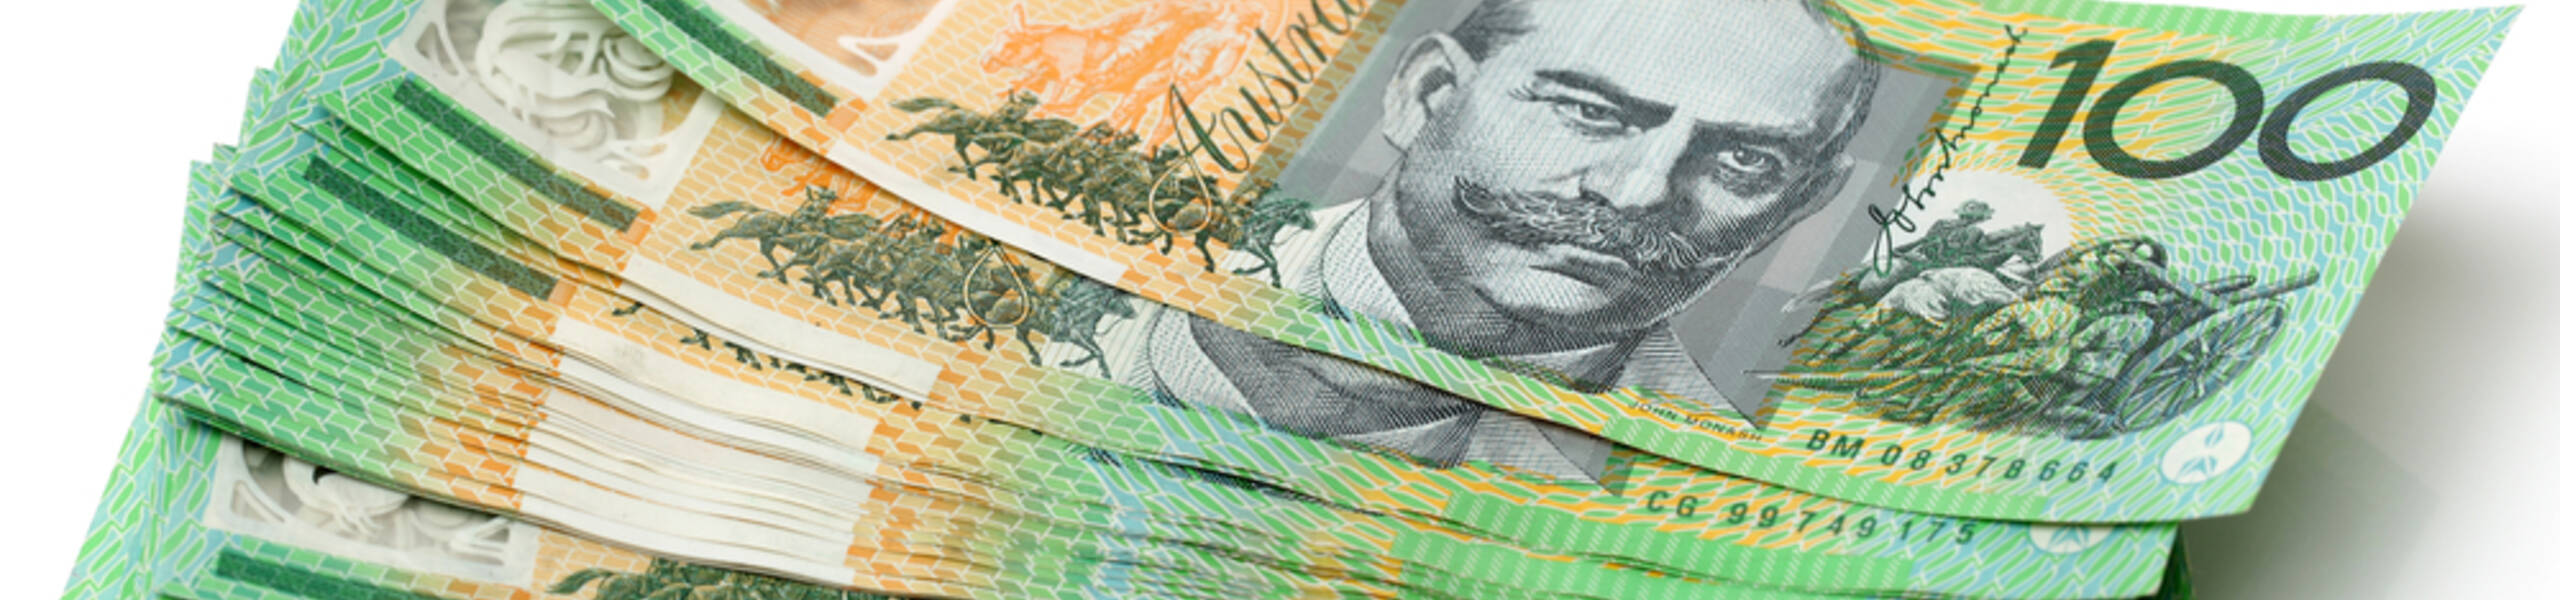 تحليل زوج الأسترالي دولار ليوم 2-7-2020